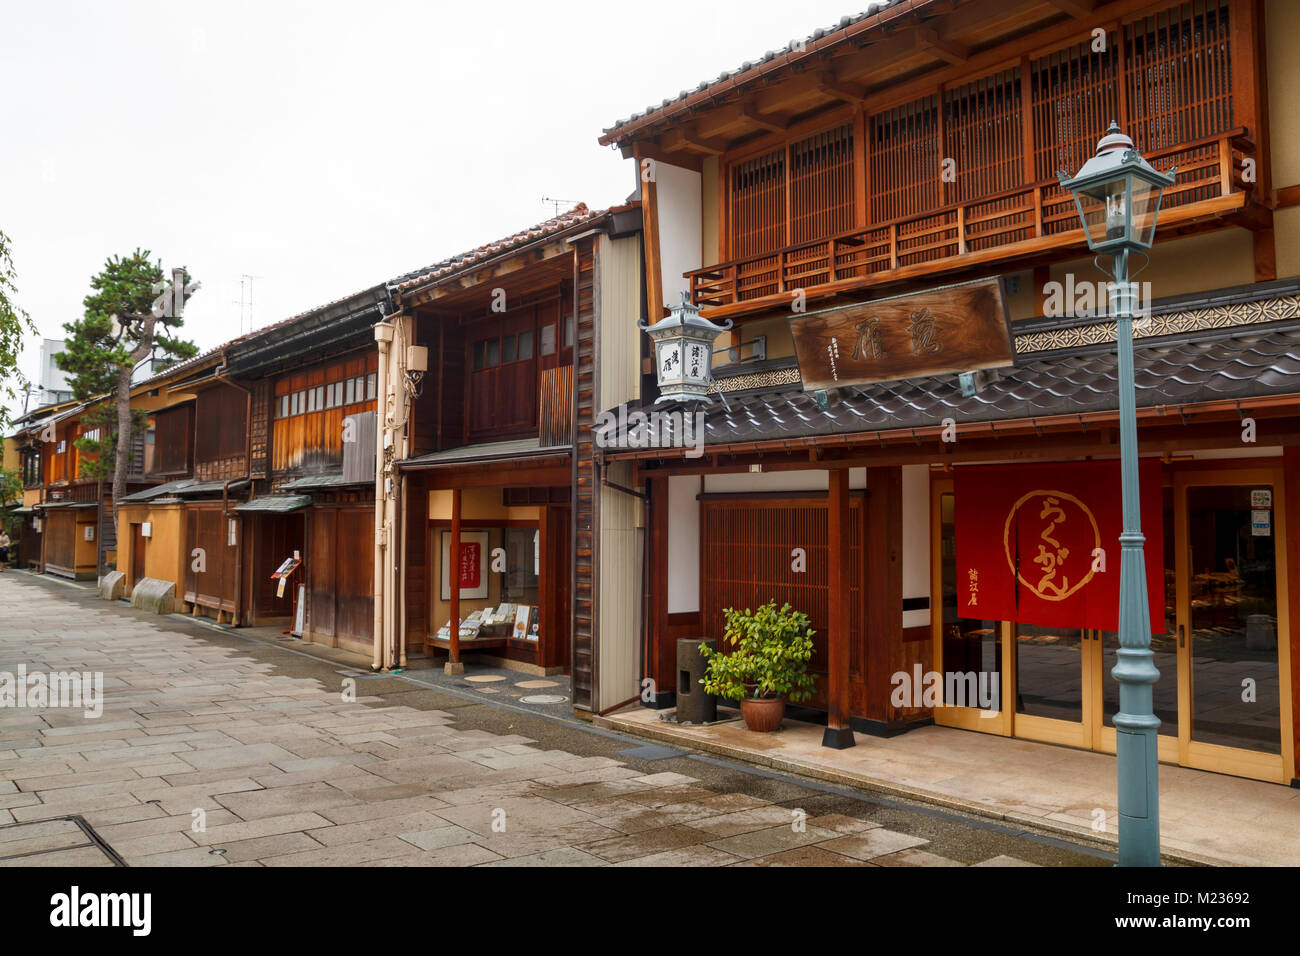 Nishi Chaya Bezirk Straßen, einem traditionellen japanischen Stil Viertel mit Holzhäusern in Kanazawa, Japan Stockfoto